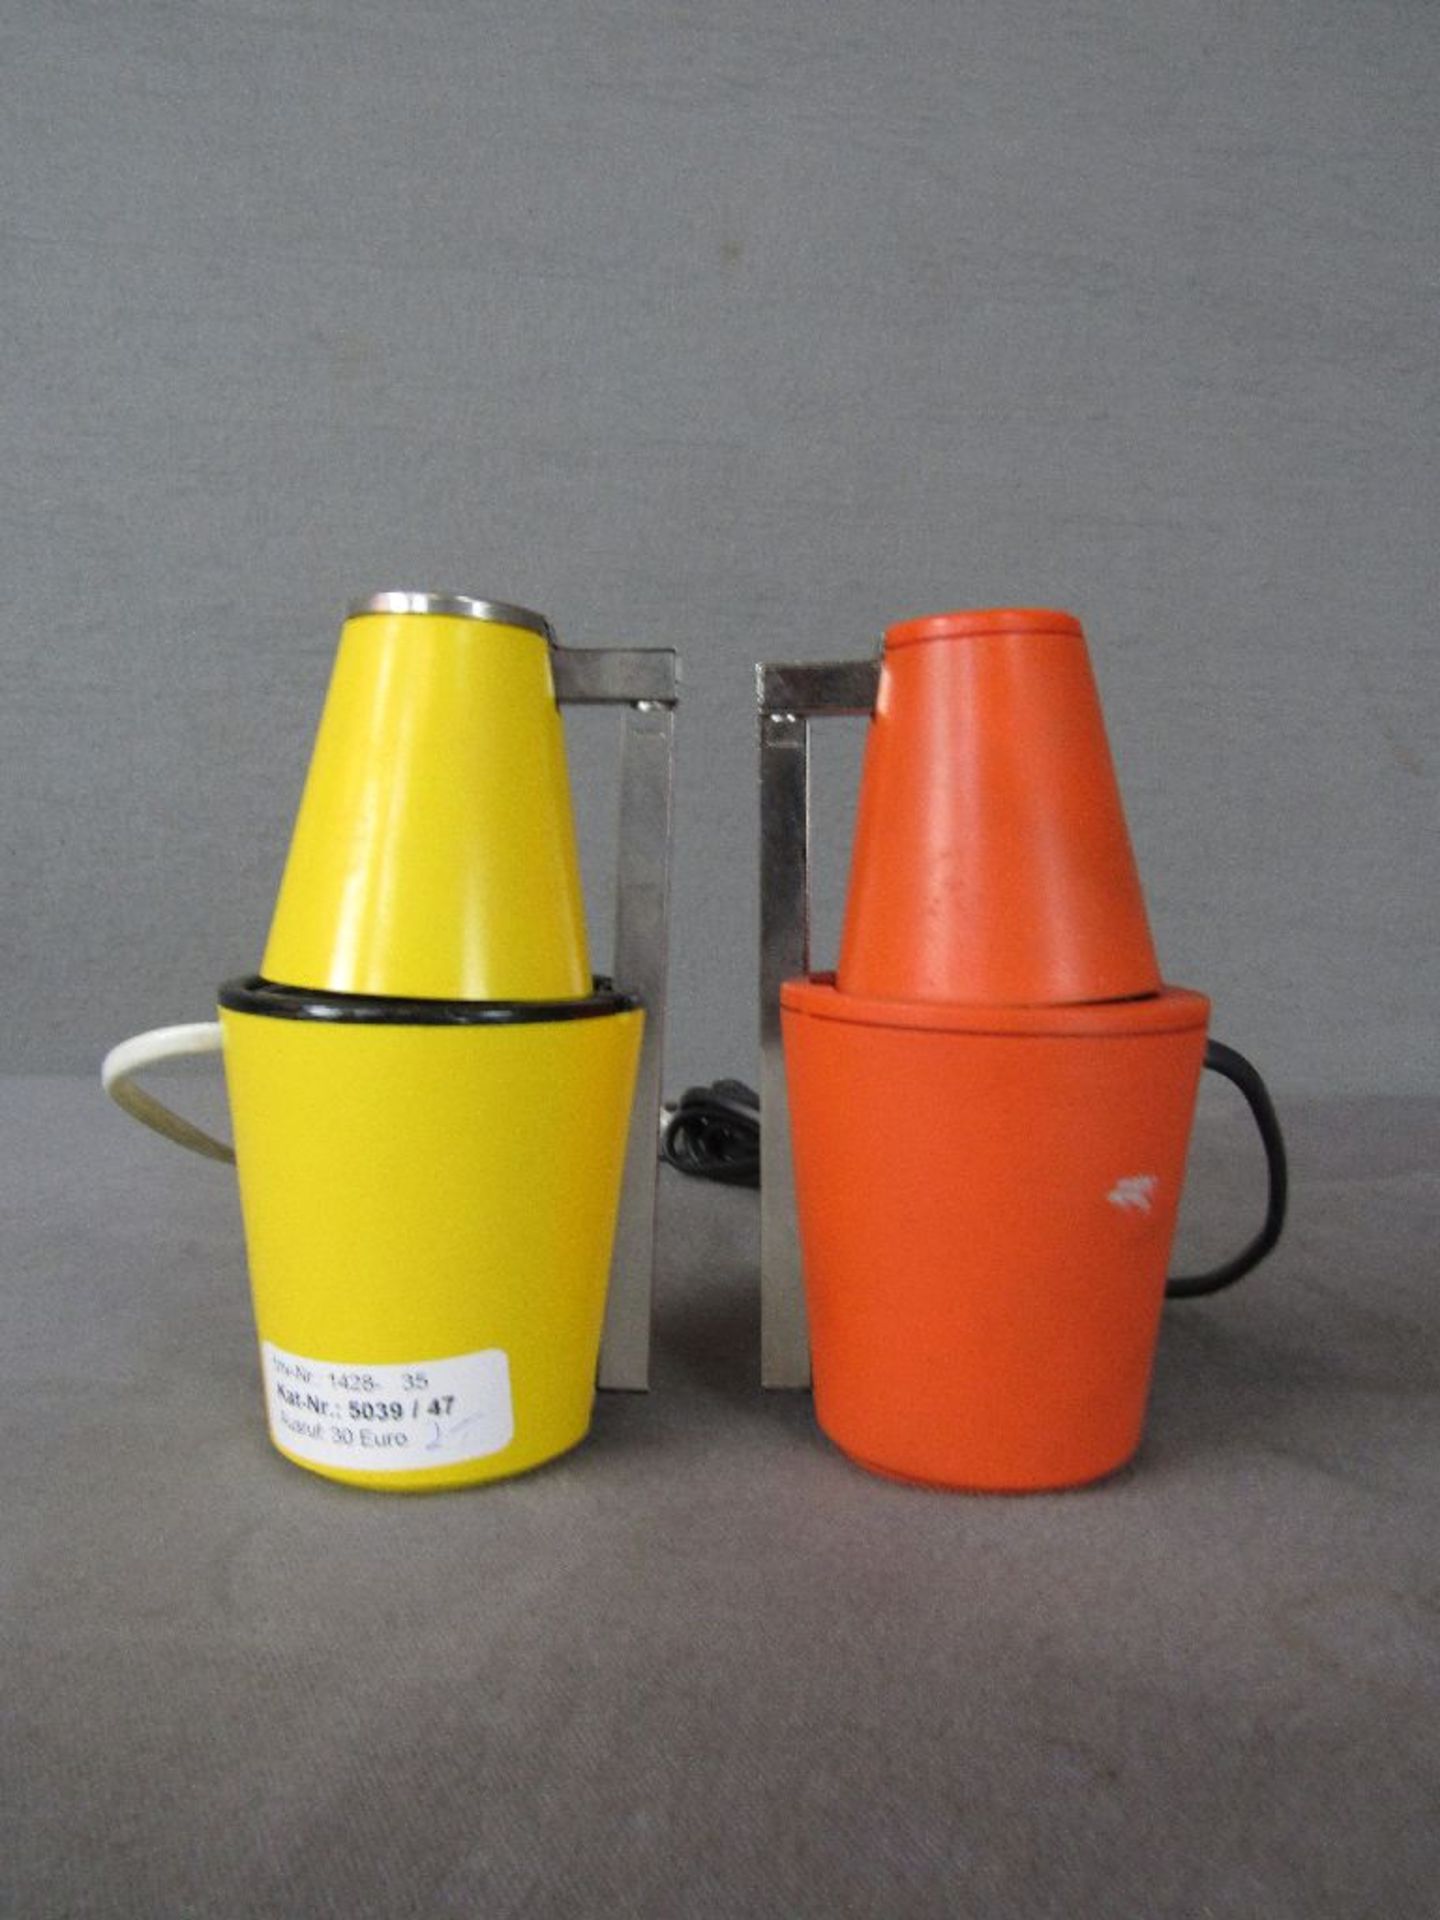 Vintage 60er Jahre zwei Schreibtischlampen Lampette Made in Germany gelb und orange - Image 3 of 3